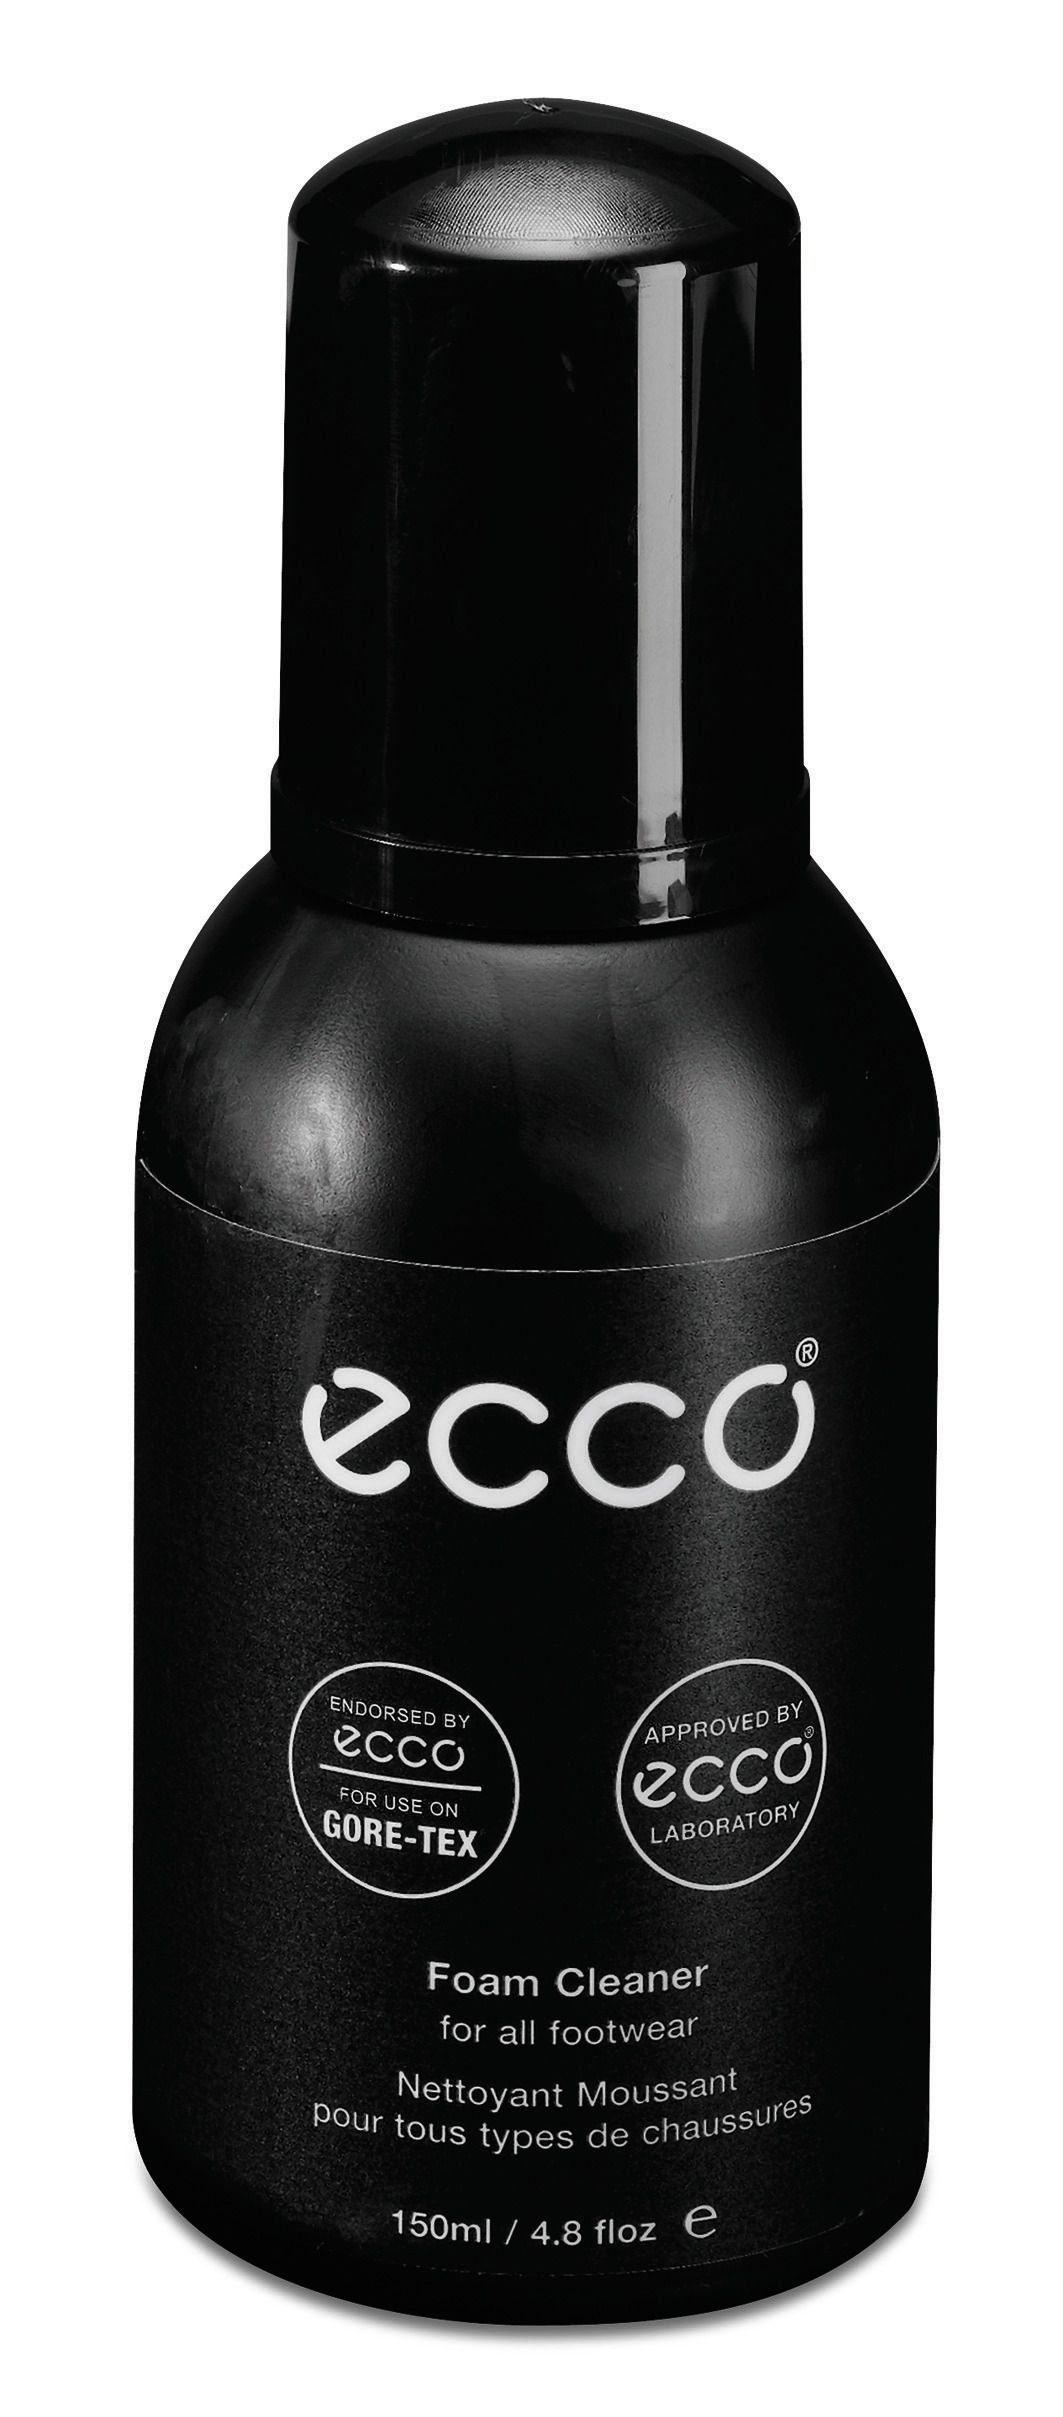 Foam Cleaner - ECCO.com